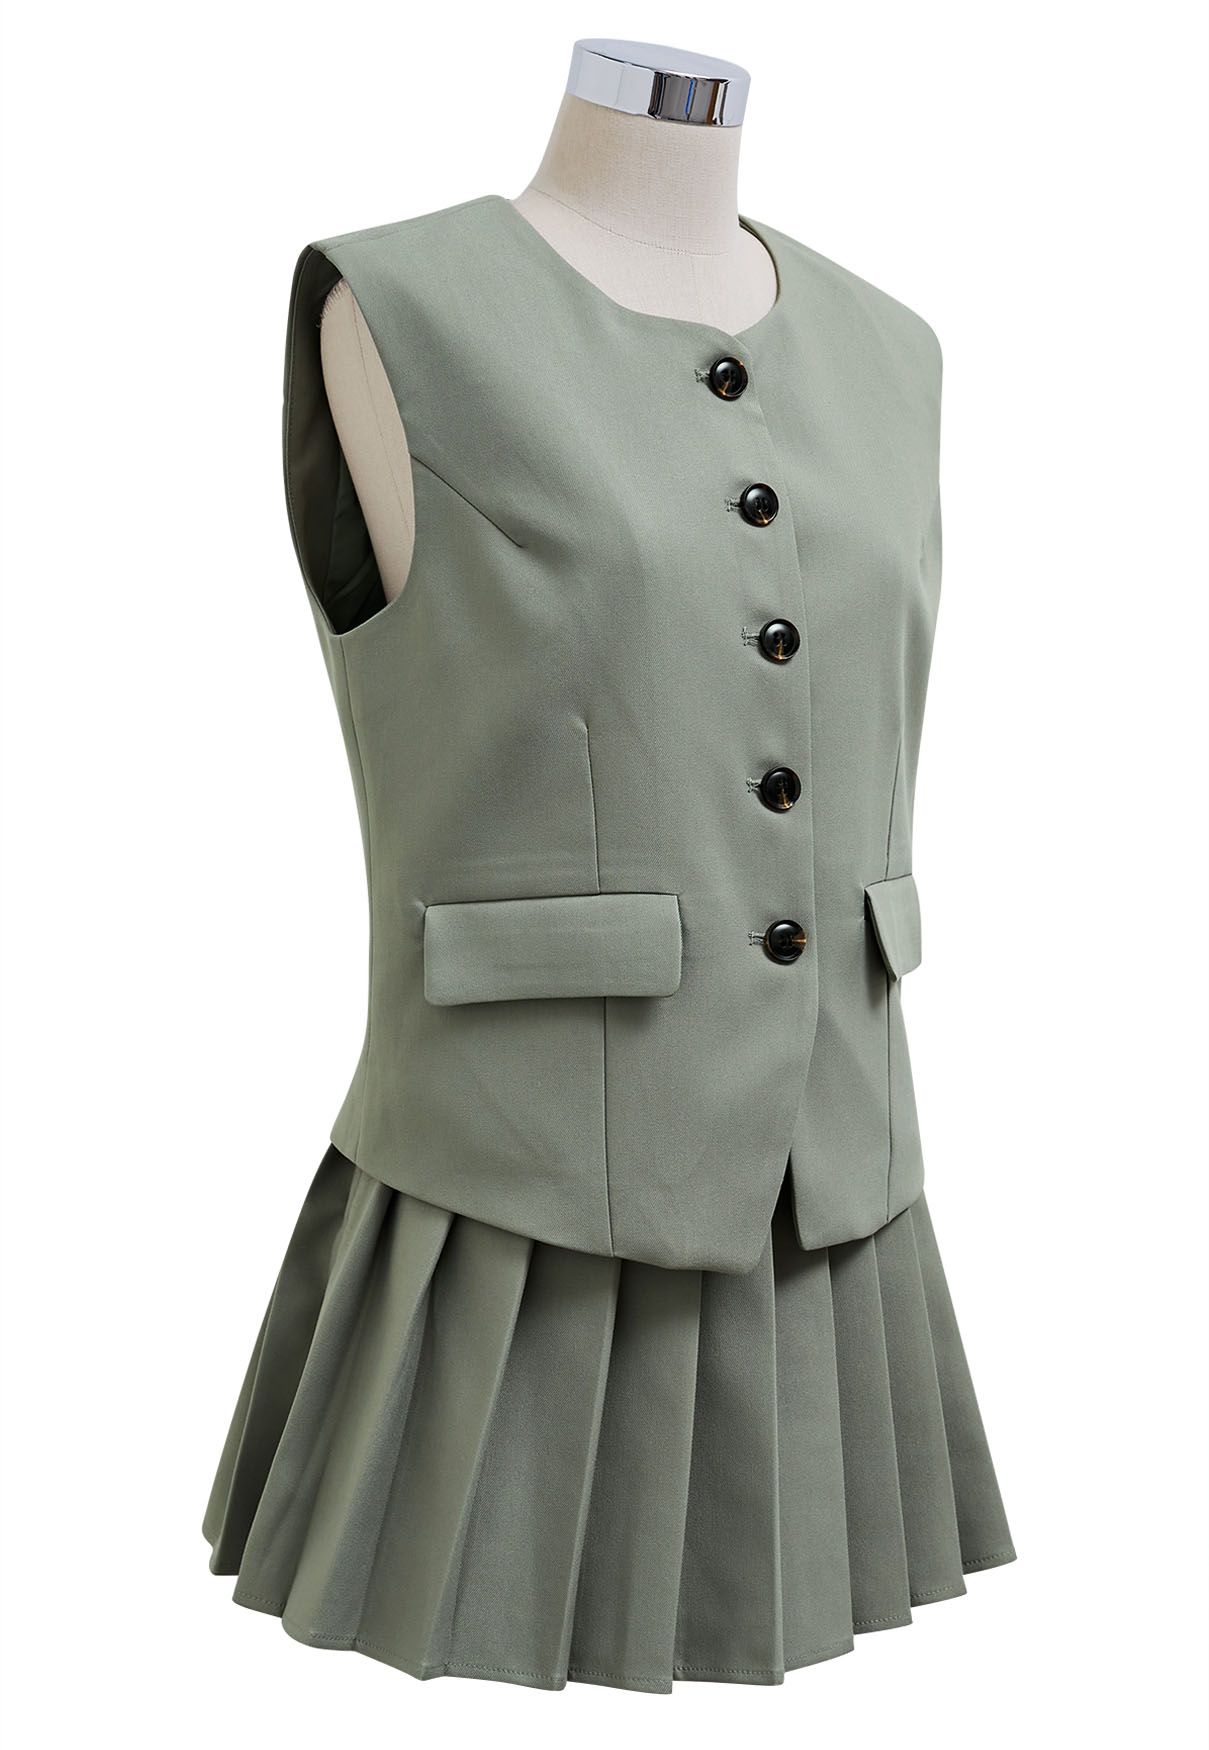 Conjunto de blazer tipo chaleco con botones delanteros y minifalda plisada en gris